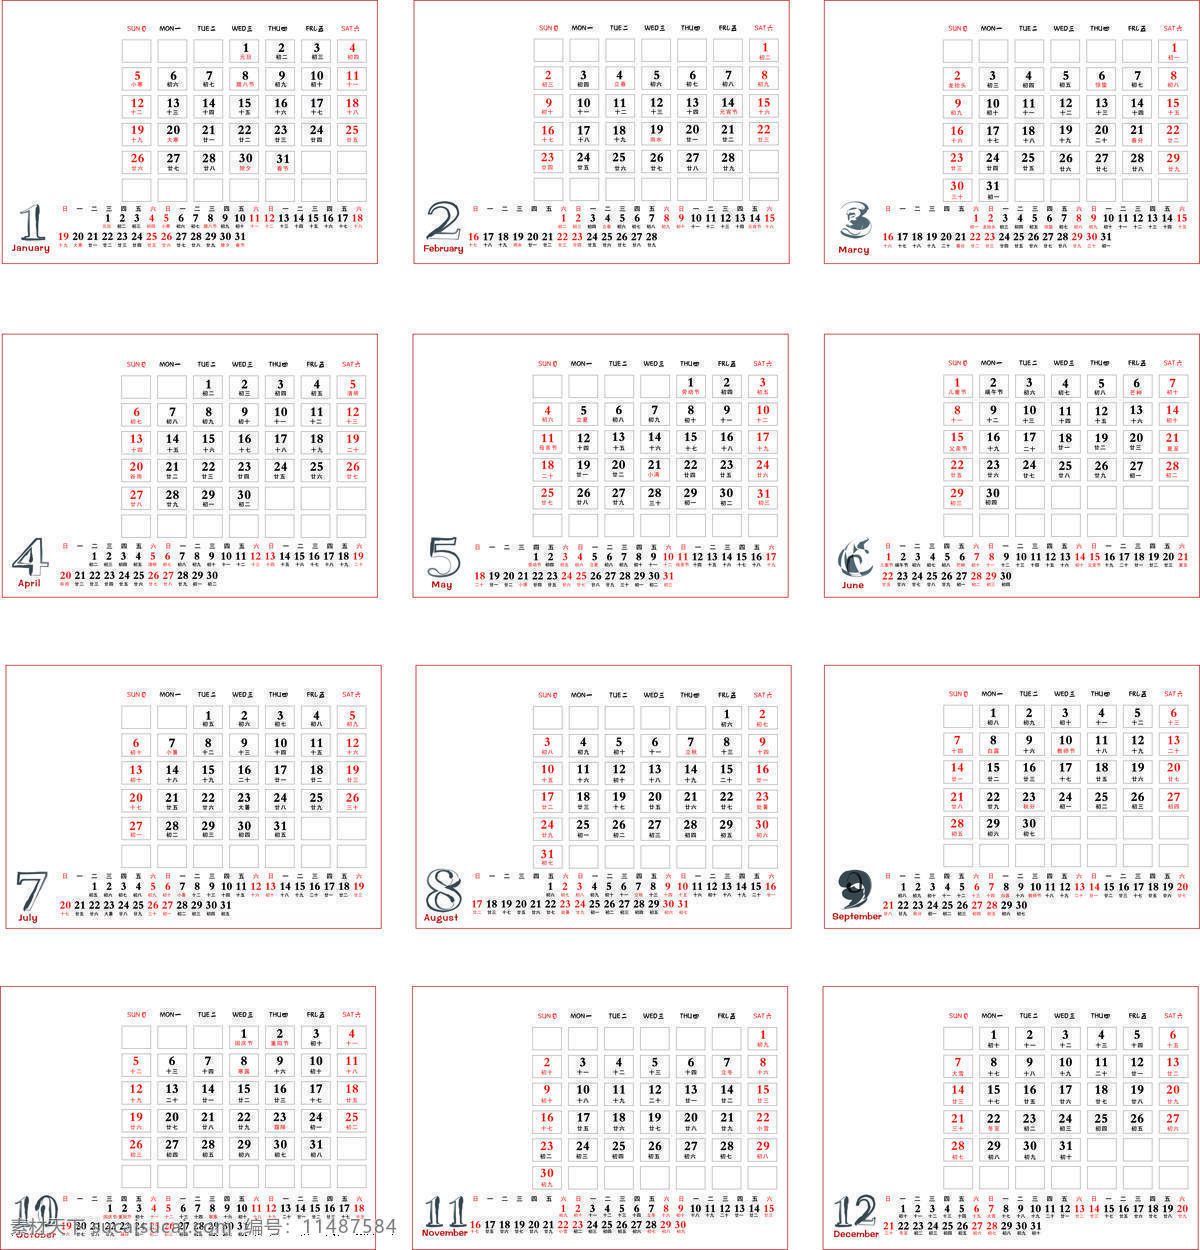 12个月 2014 年 日历 模板下载 矢量 简单 节假日 生活百科 生活用品 节日素材 2015羊年